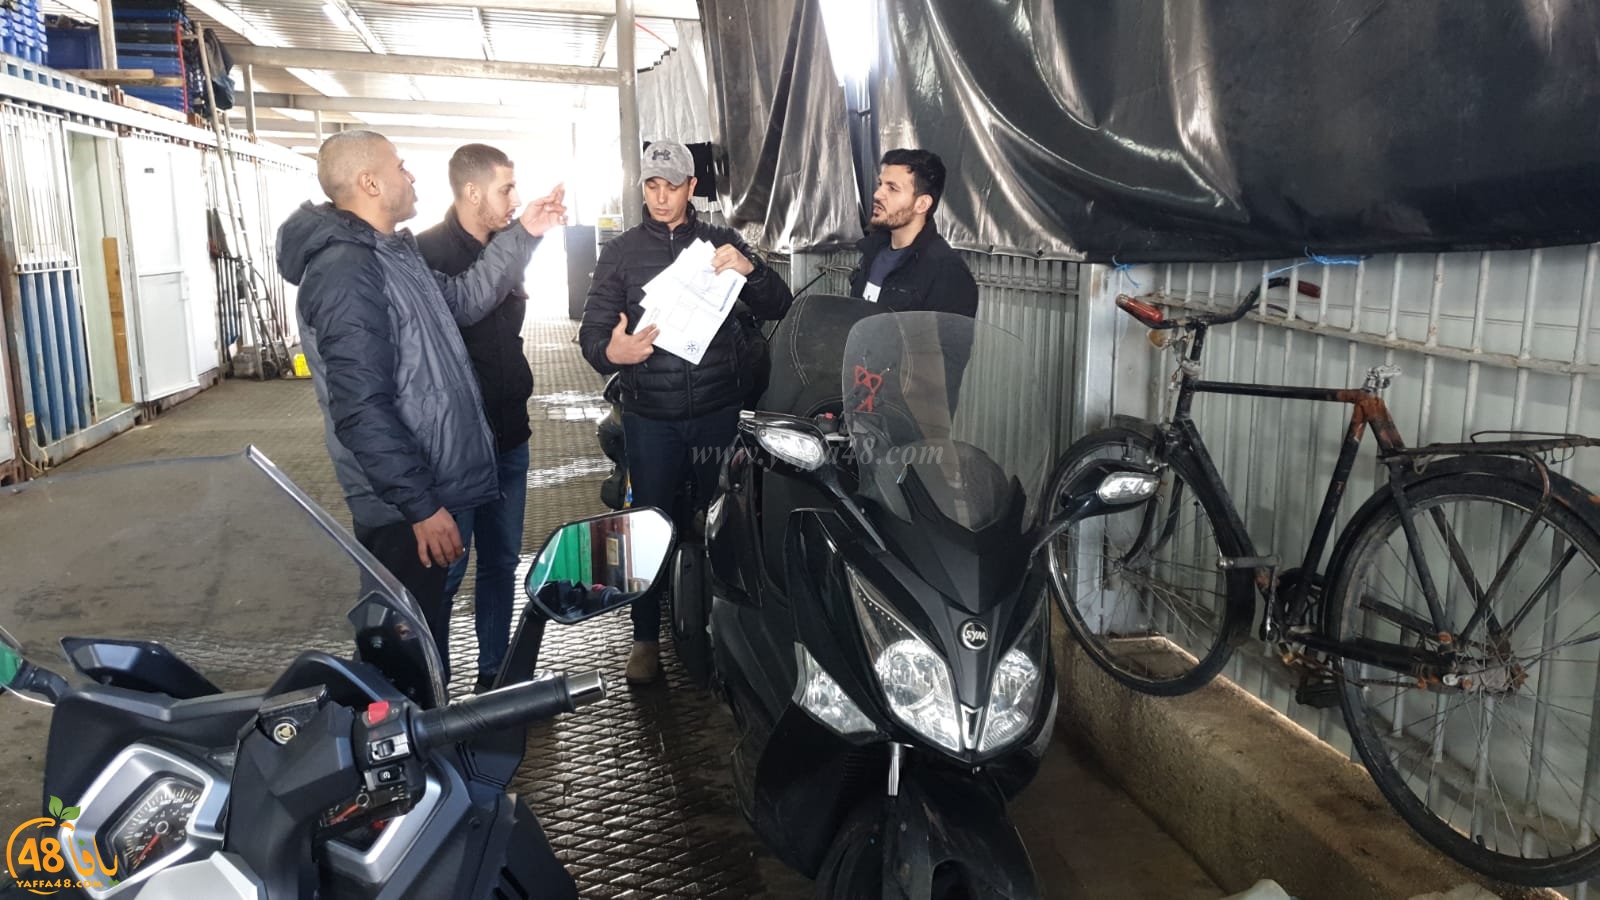 يافا: الشرطة تُداهم مناطق متفرقة من المدينة بحثاً عن الدراجات النارية